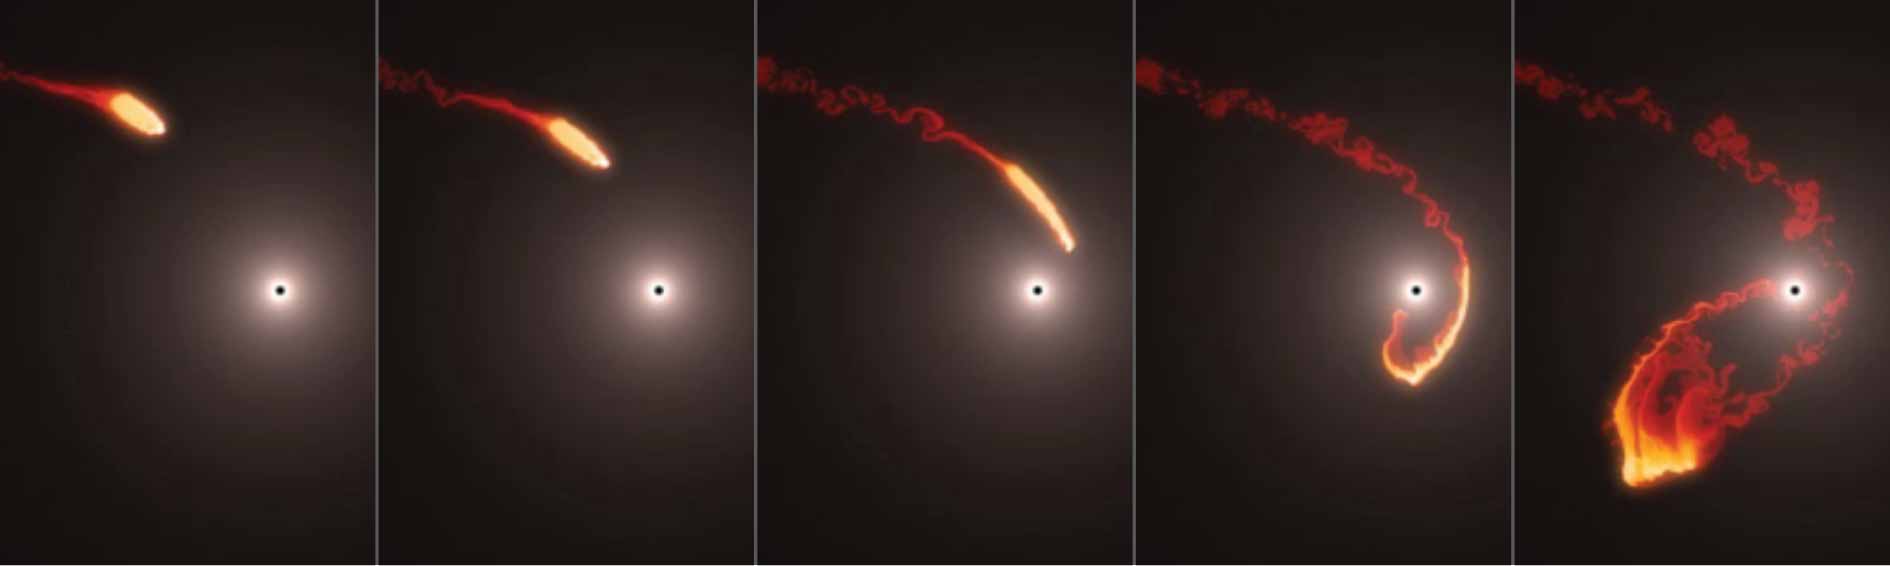 Các nhà khoa học tin rằng trong quá trình rơi vào hố đen lớn nhất vũ trụ của G2, ngôi sao này đã bị đánh cắp một phần năng lượng